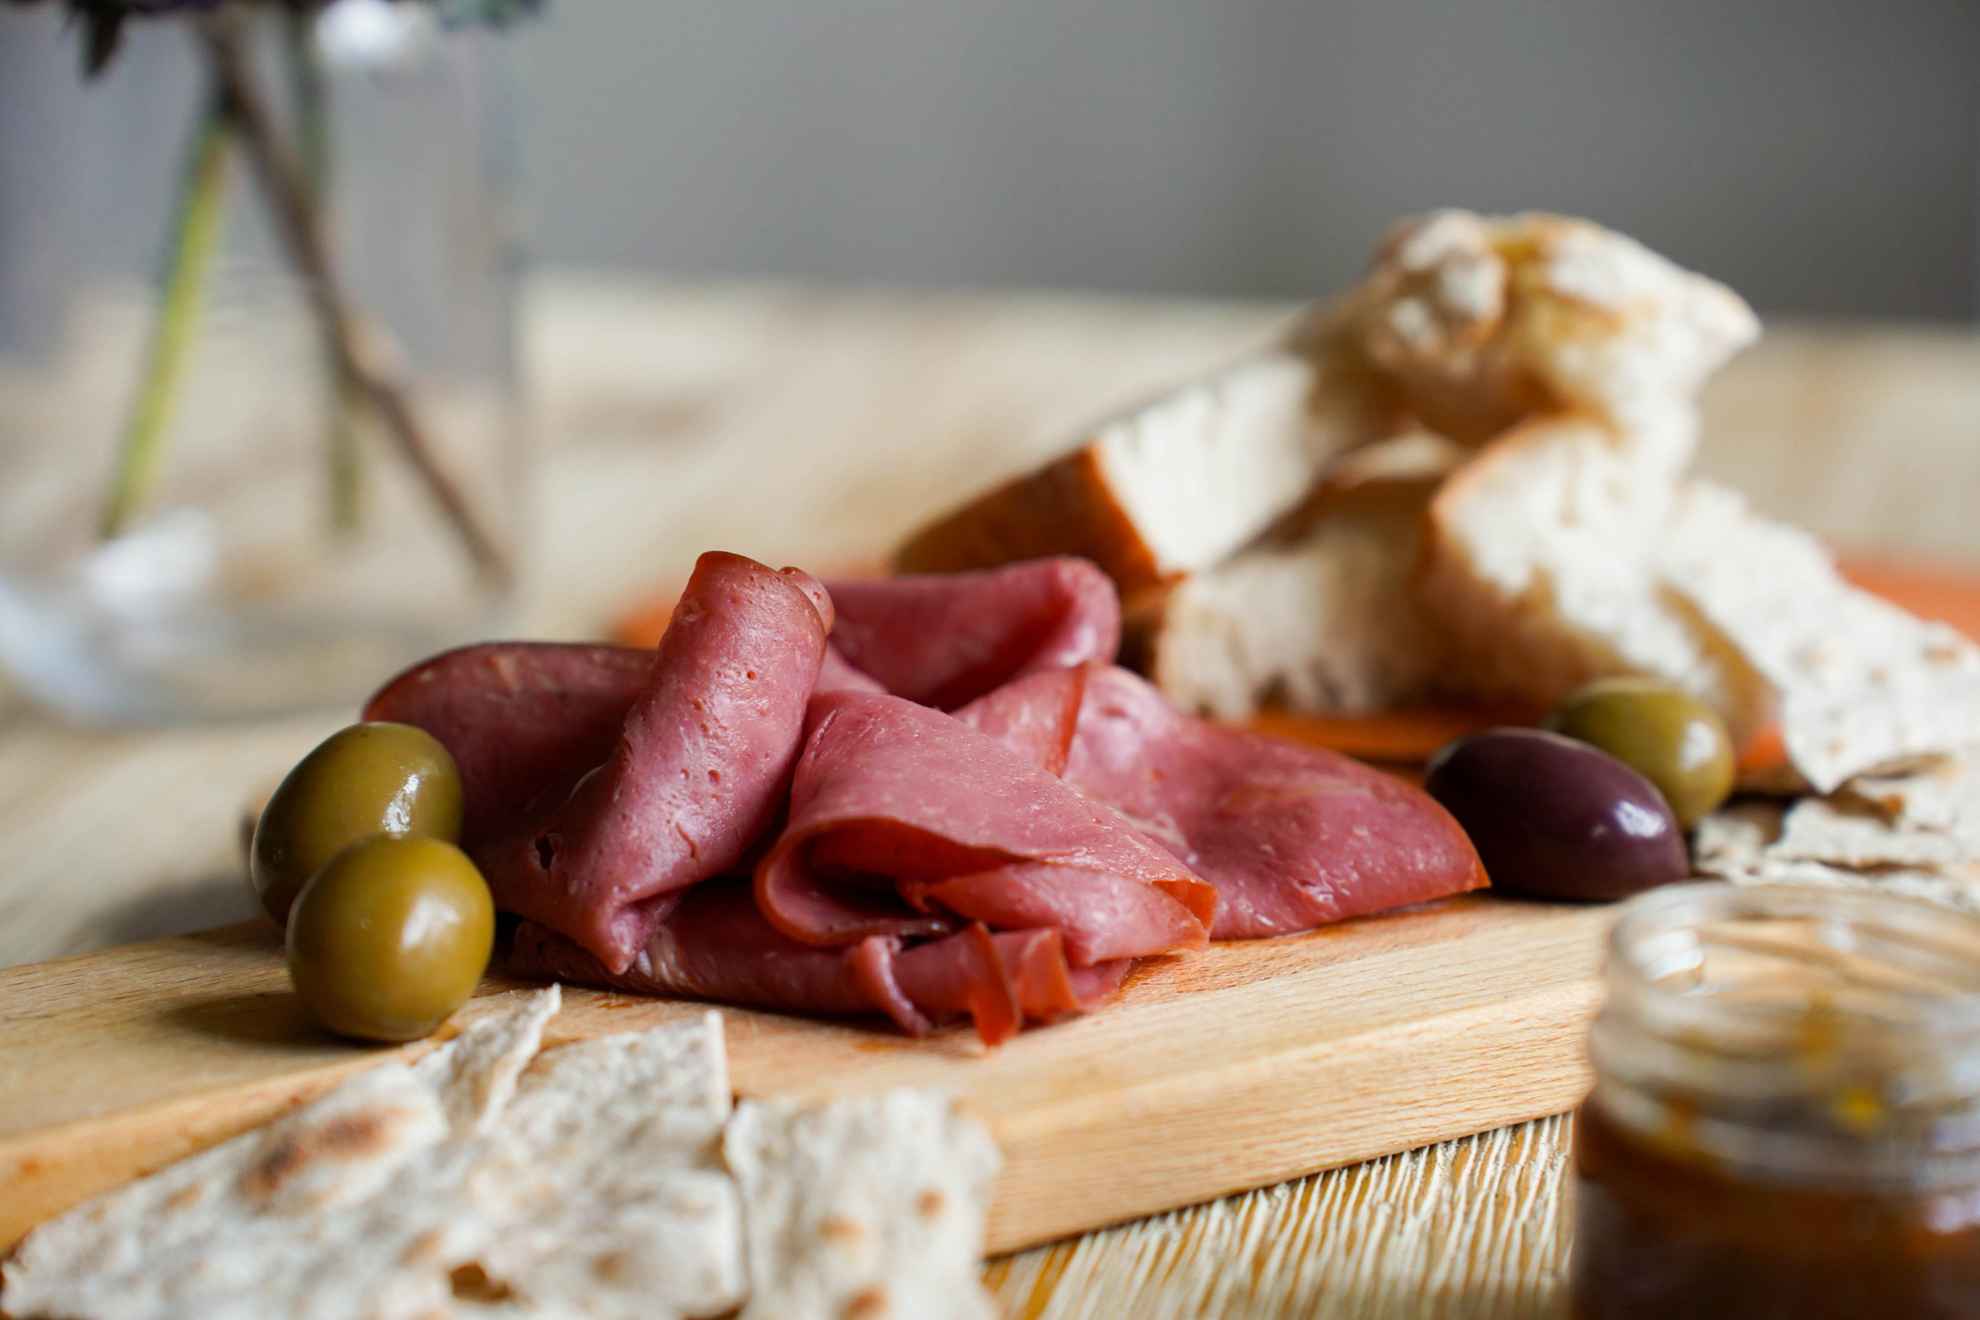 Une planche de charcuterie avec des olives, du pain et de la viande de renne fumée.